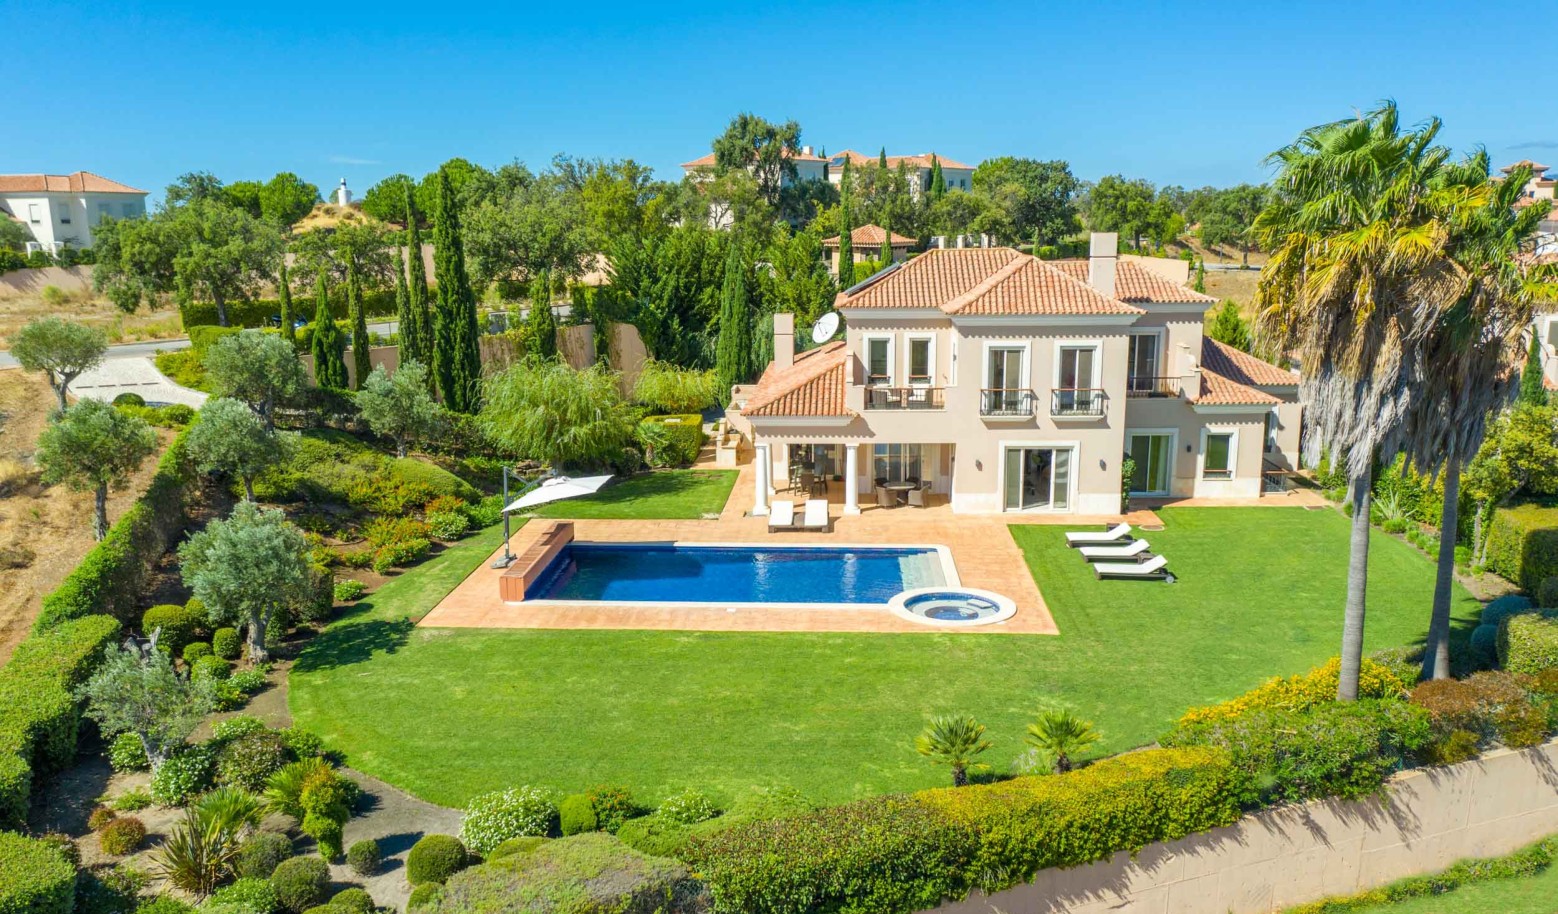 5 Bedroom Villa with pool for sale in Vila Real de Santo Antonio, Algarve_215679